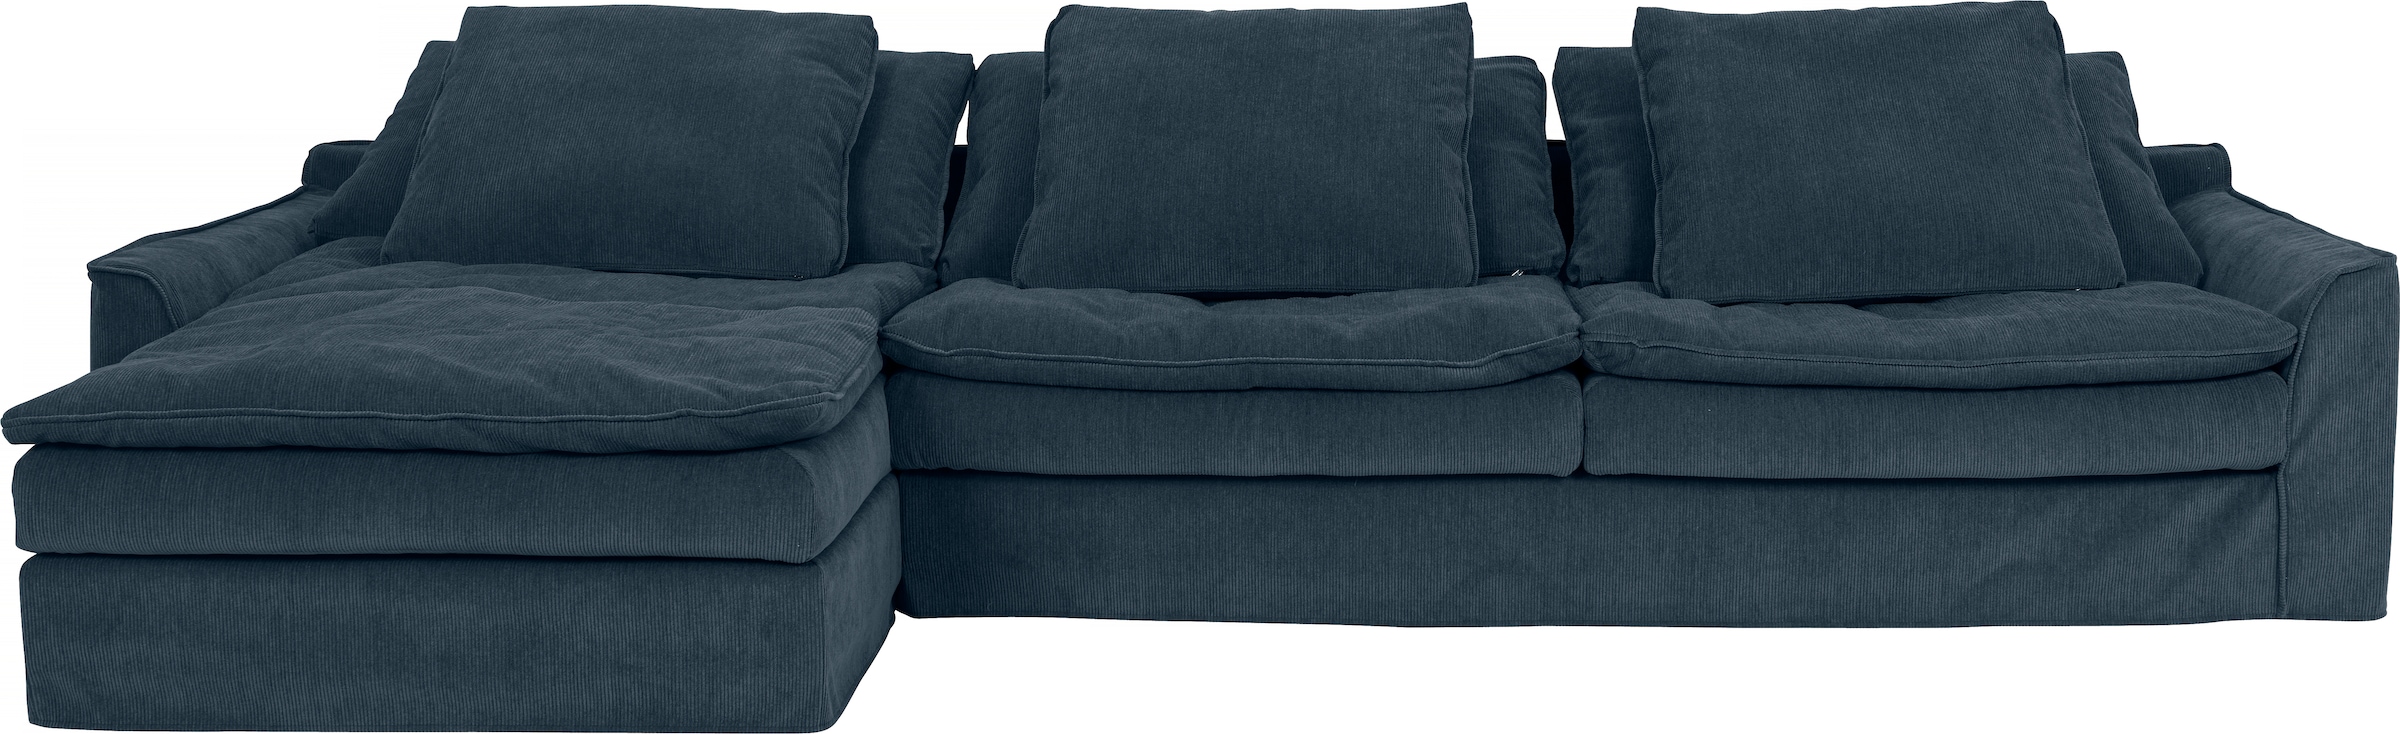 Big-Sofa »Sake«, mit 6 Kissen, abnehmbarer Hussenbezug, Kissen mit Federn gefüllt